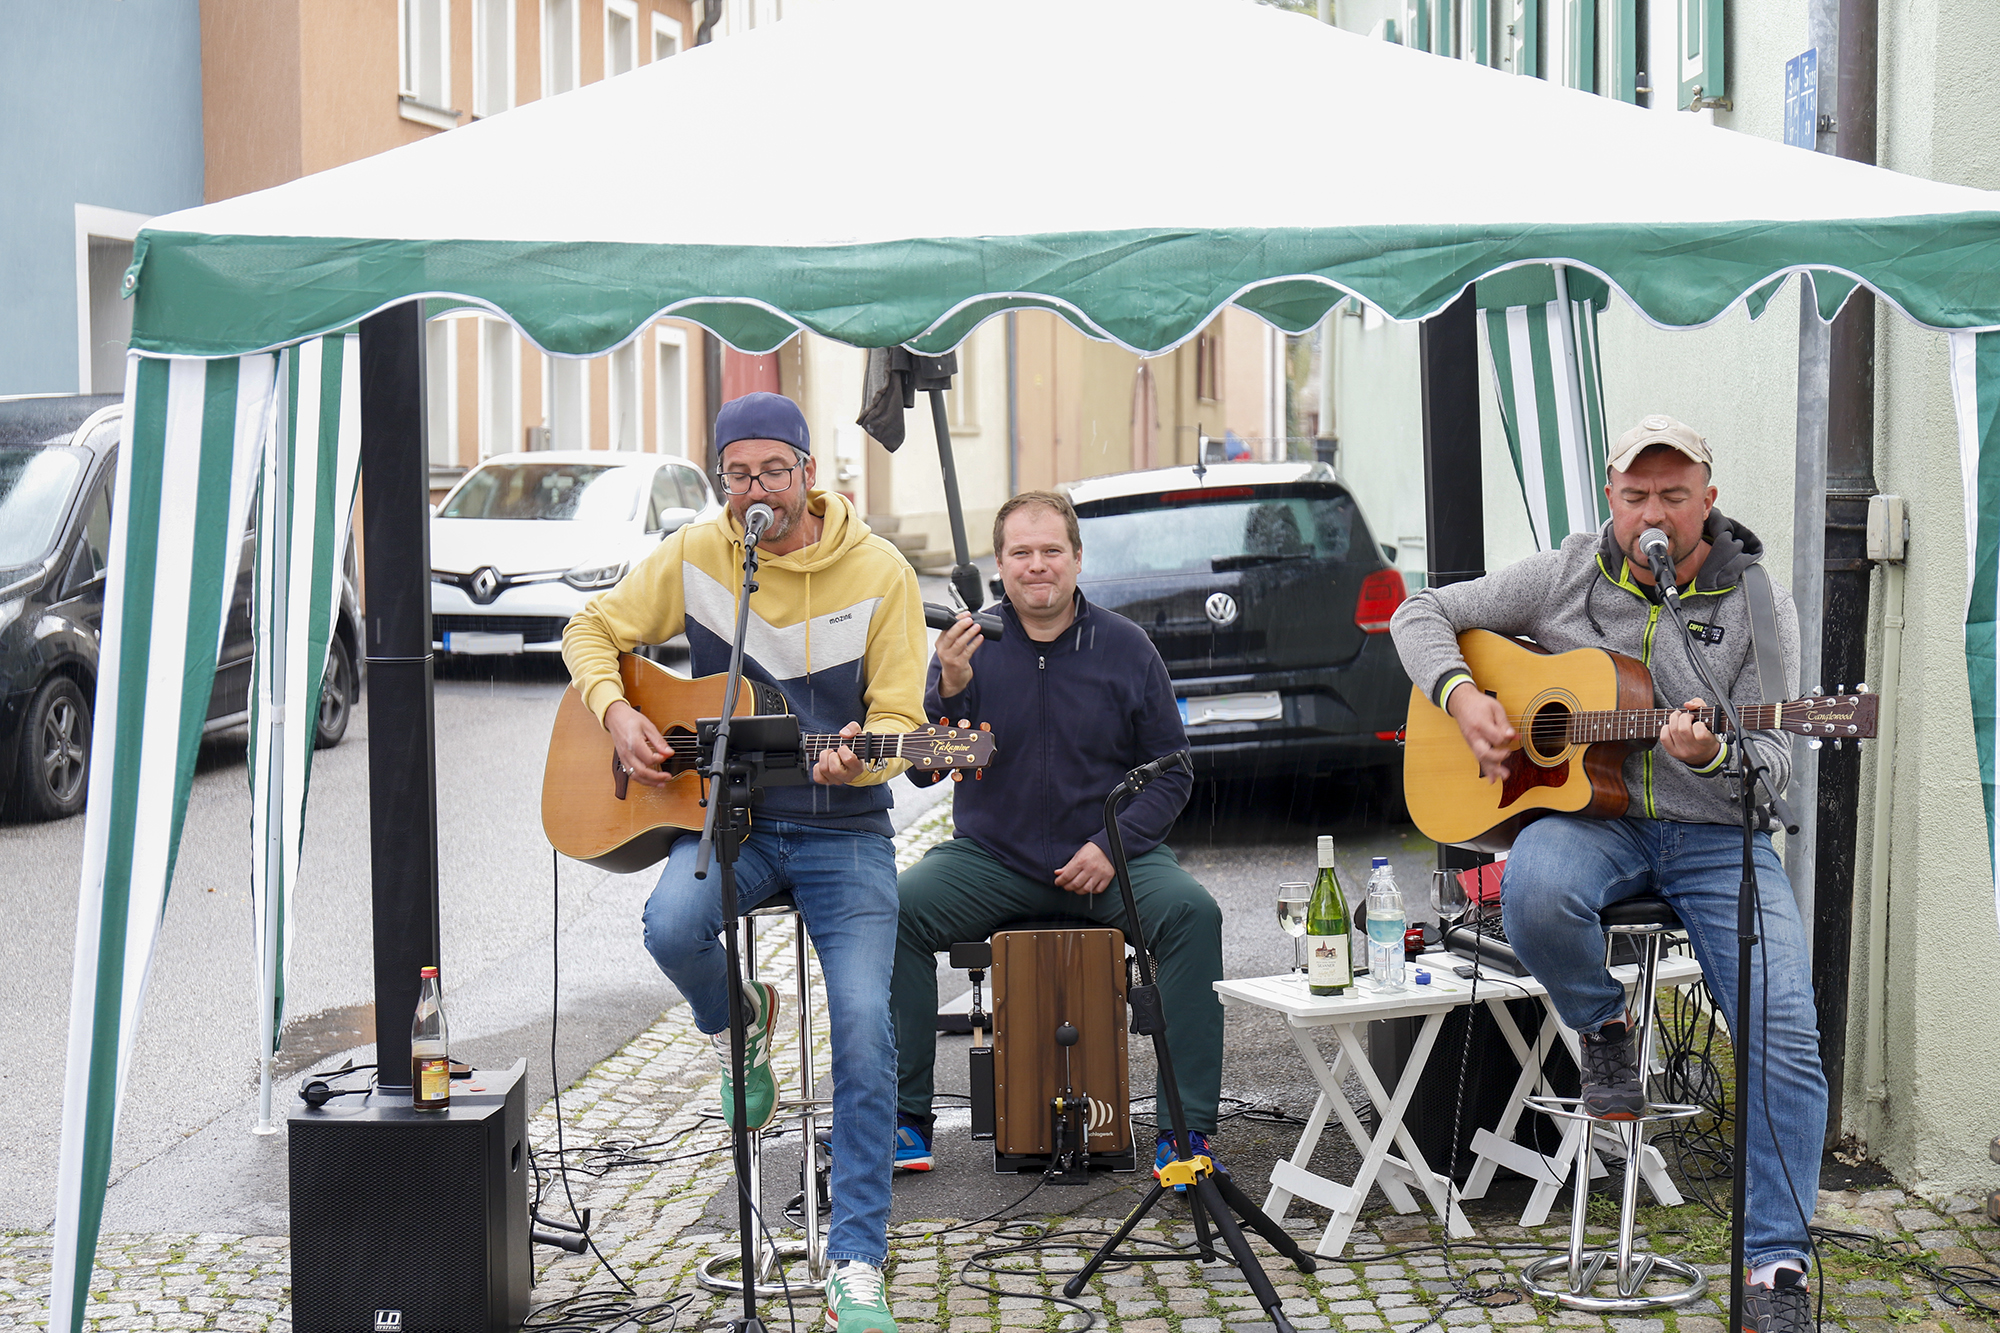 Musikalische Grüsse in der Ludwigstraße von "Trio Lecker" die trotz des Regens tapfer durchhielten.